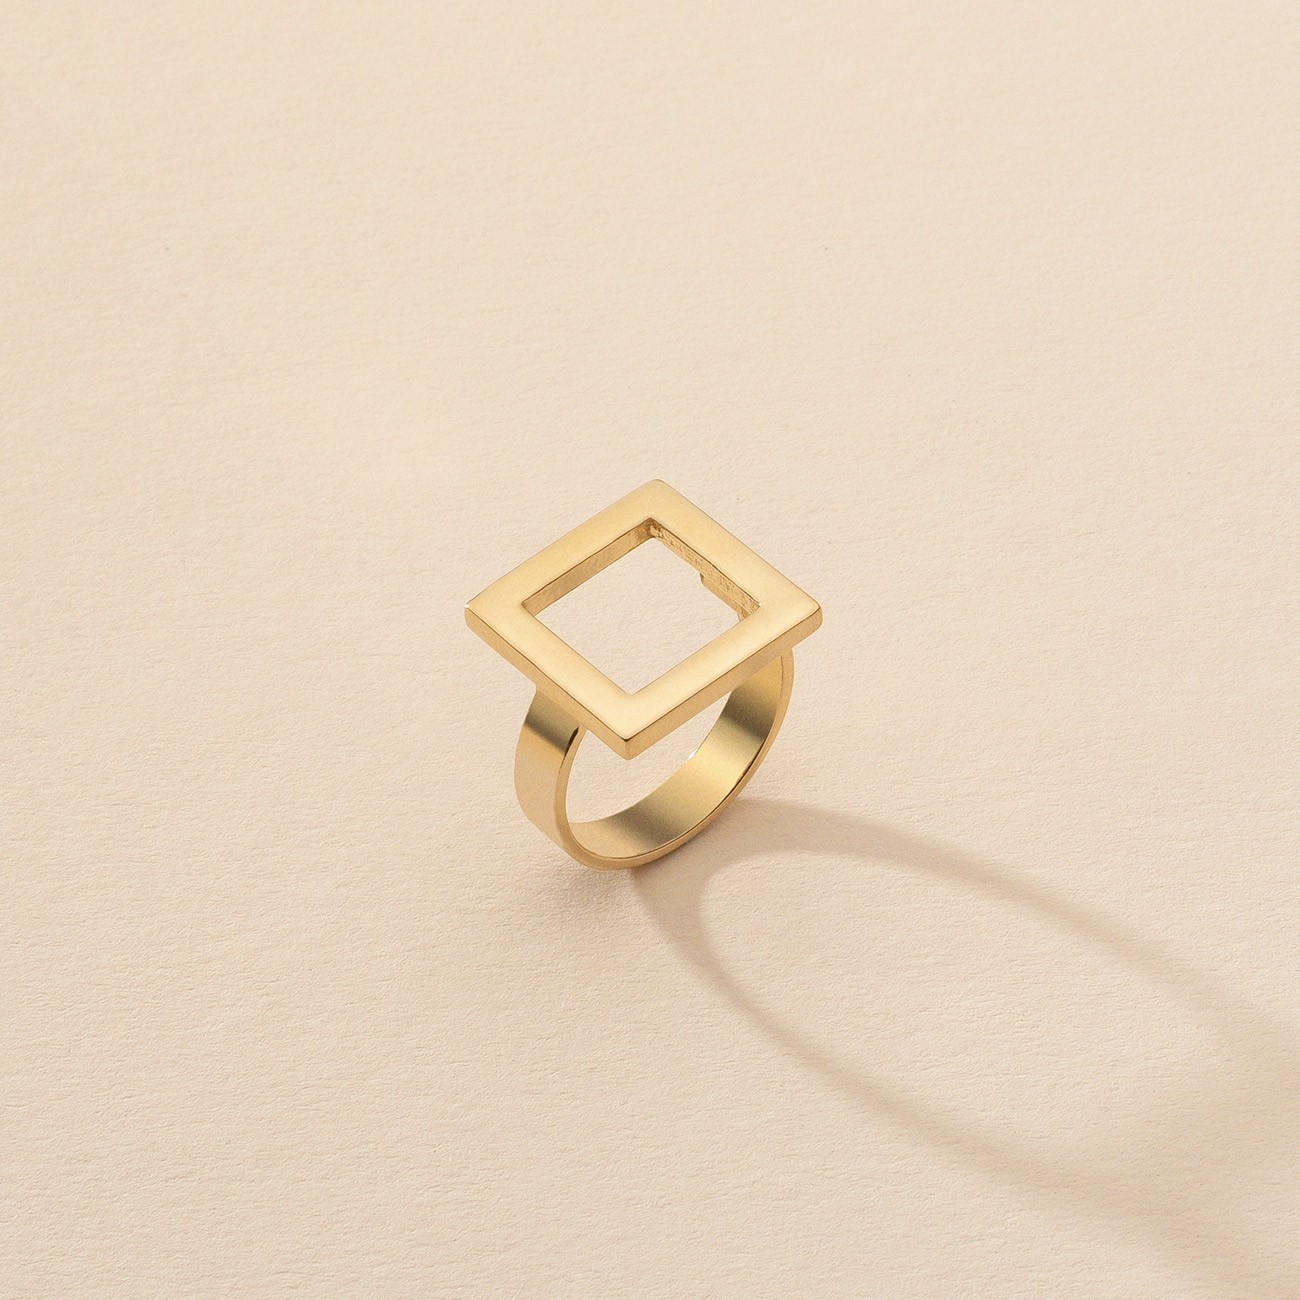 Geometrische runder ring, silber 925